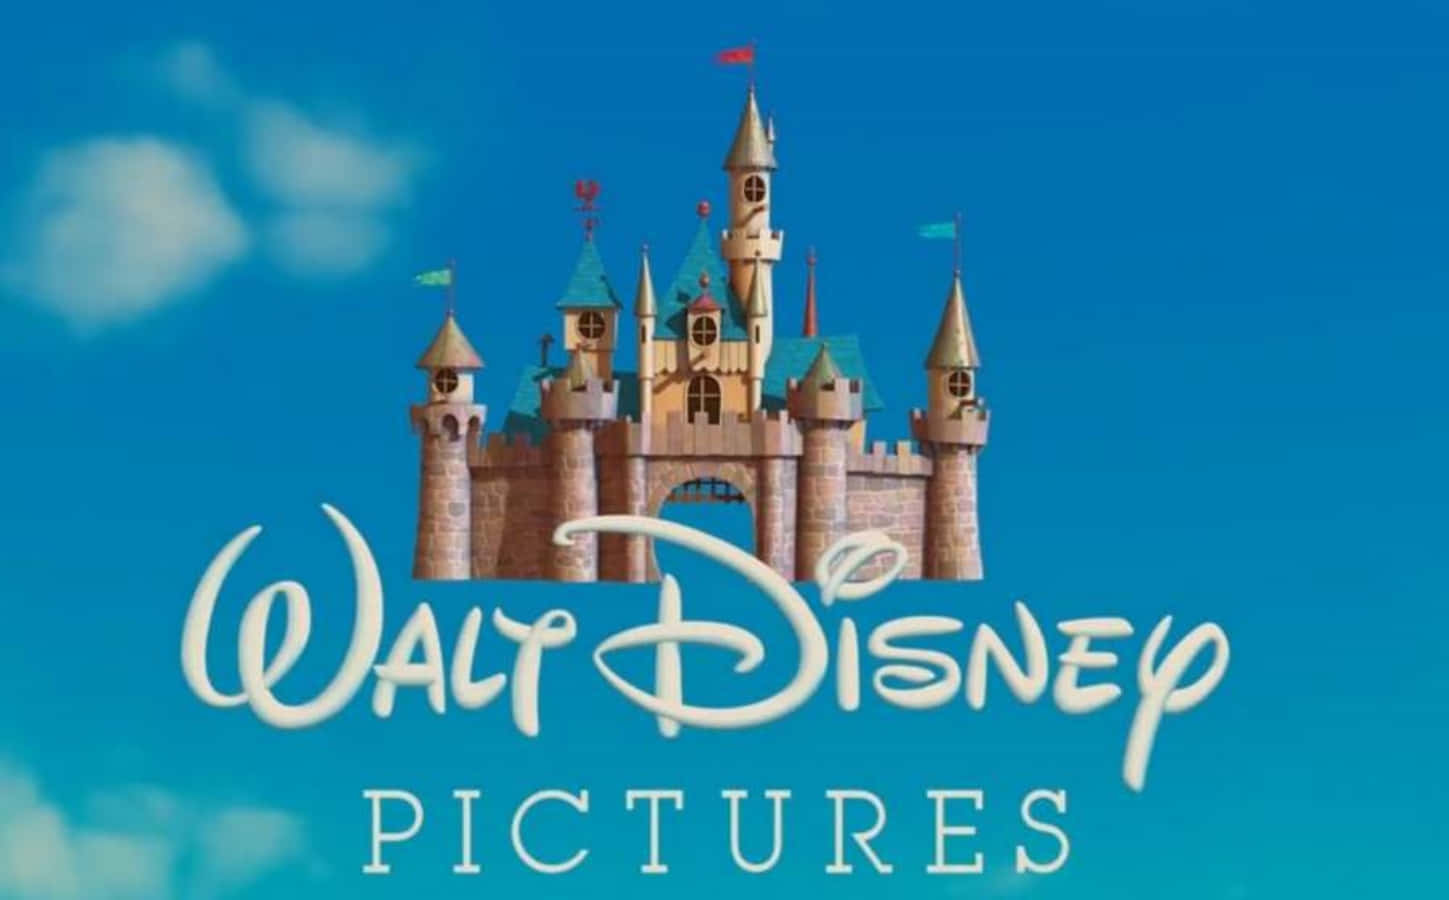 Walt Disney Castle Picture